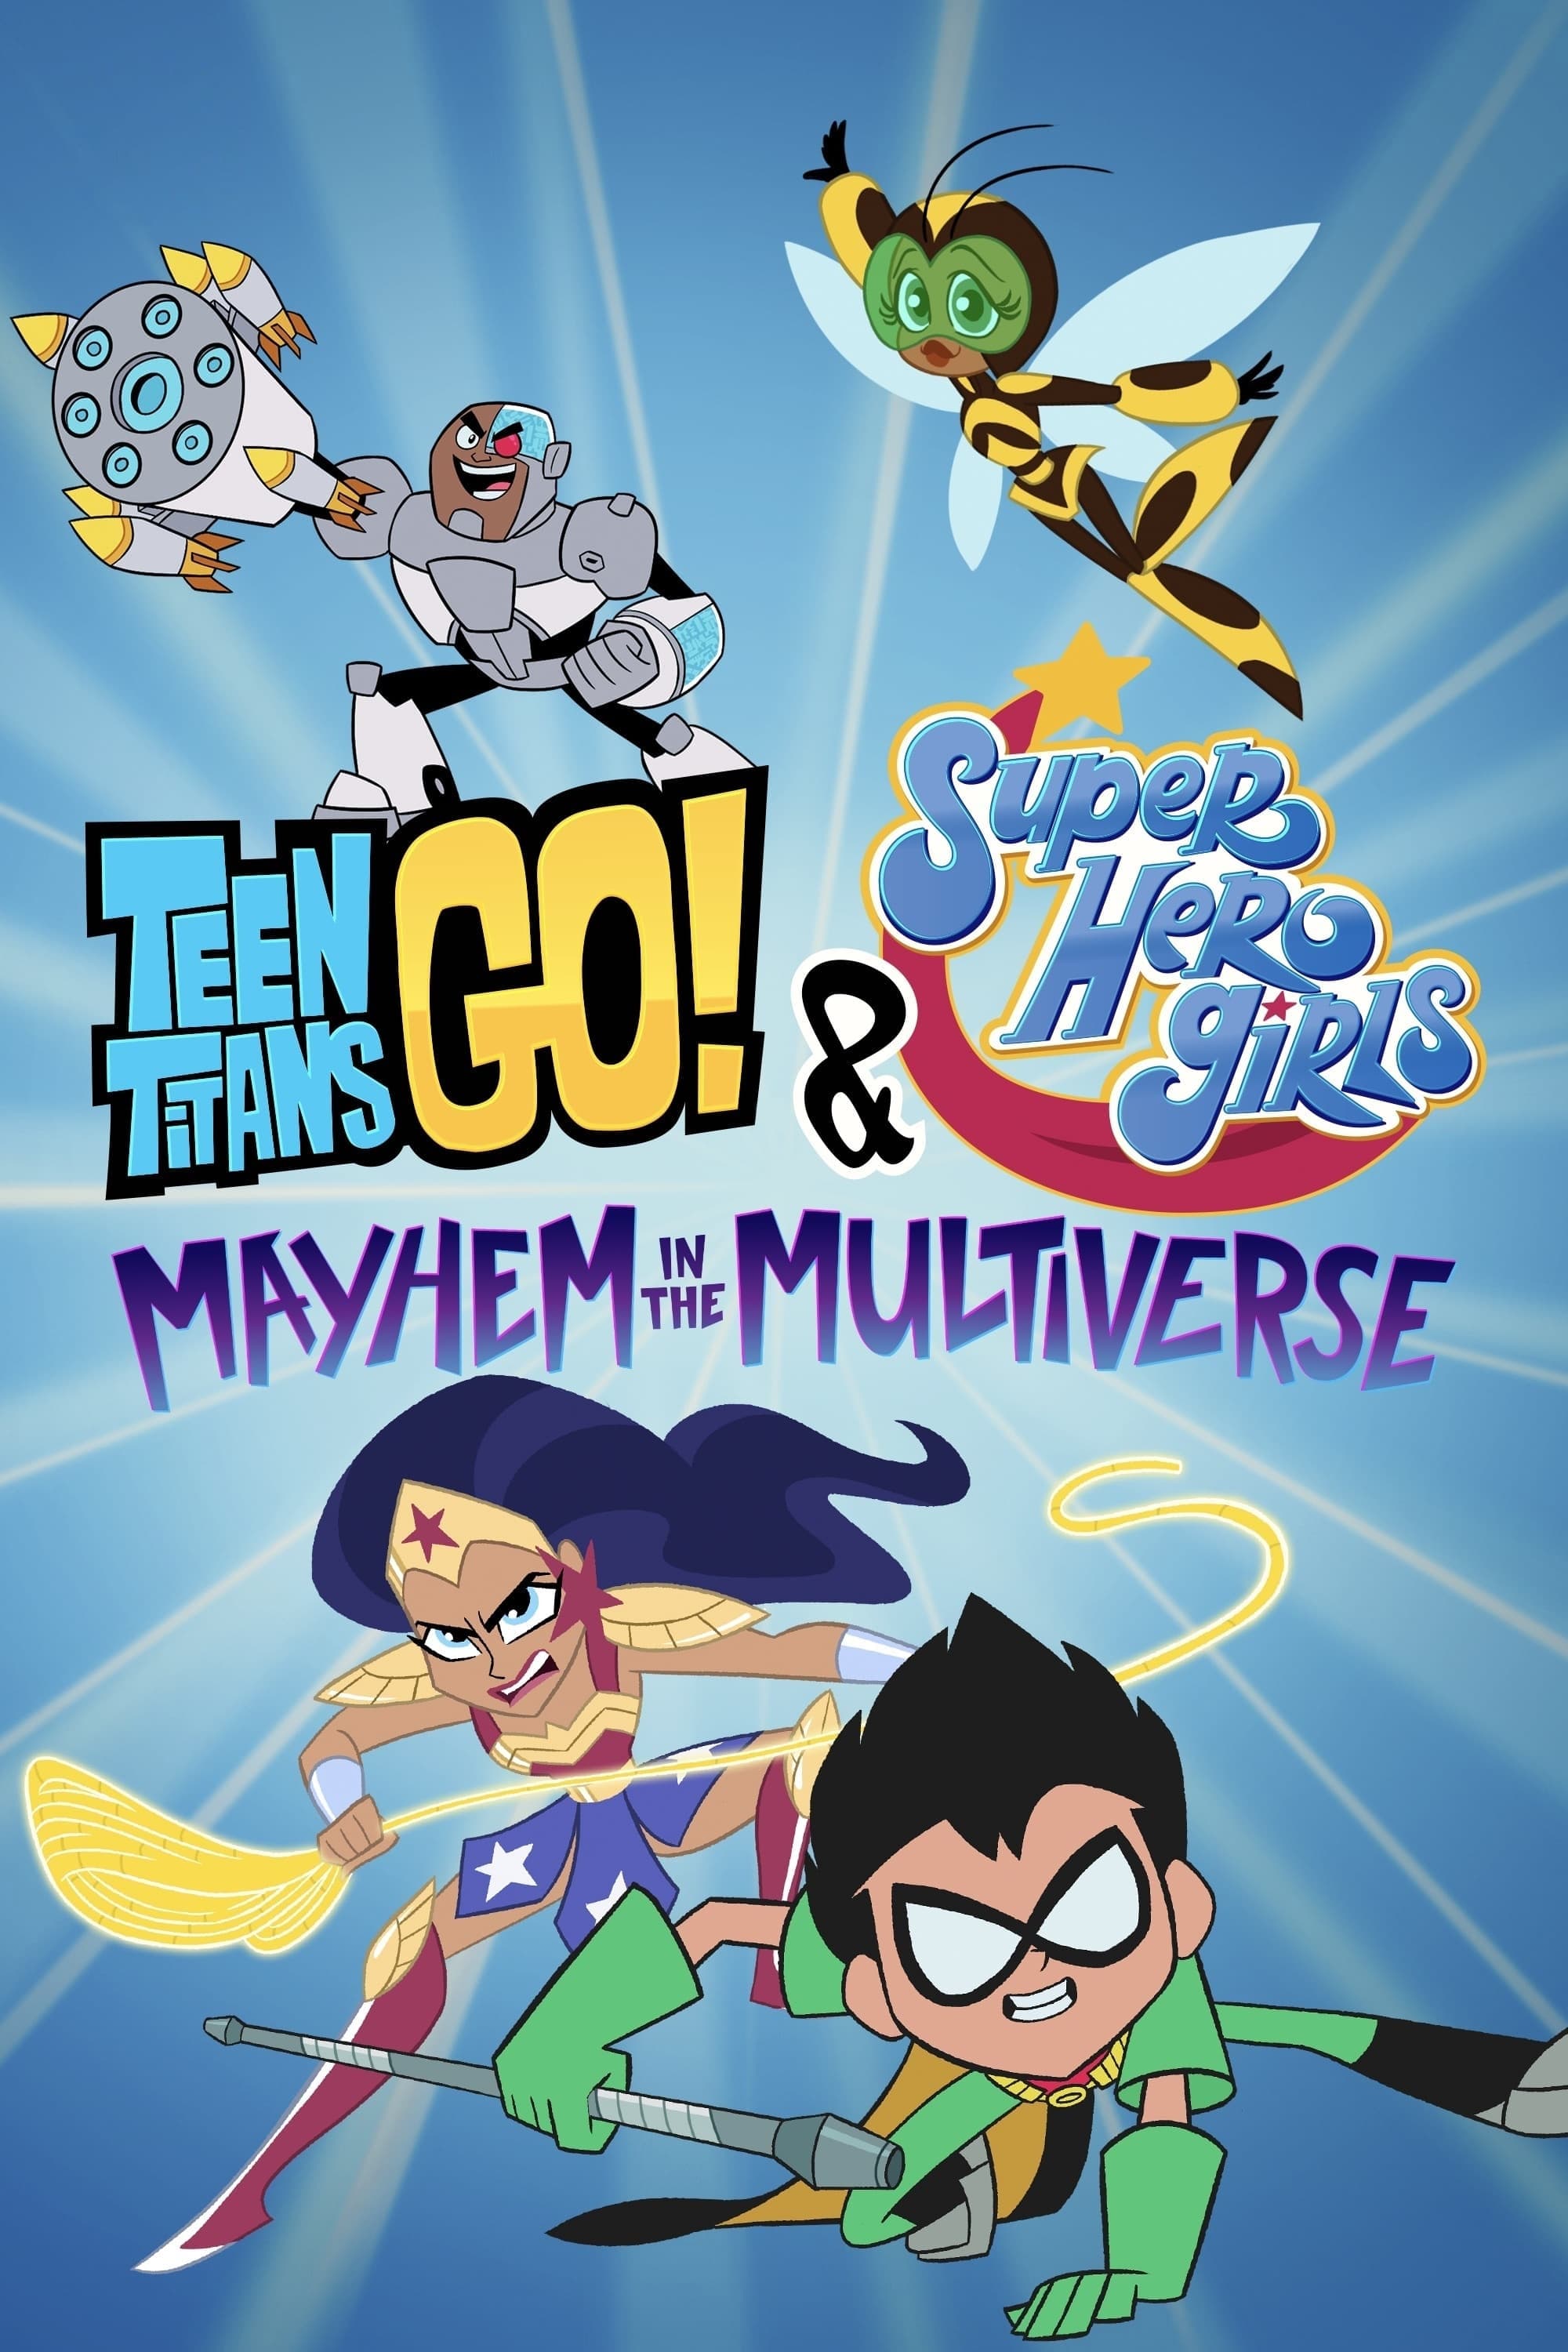 Teen Titans Go! & Các nữ siêu anh hùng DC: Mayhem trong Đa vũ trụ (Teen Titans Go! & DC Super Hero Girls: Mayhem in the Multiverse) [2022]